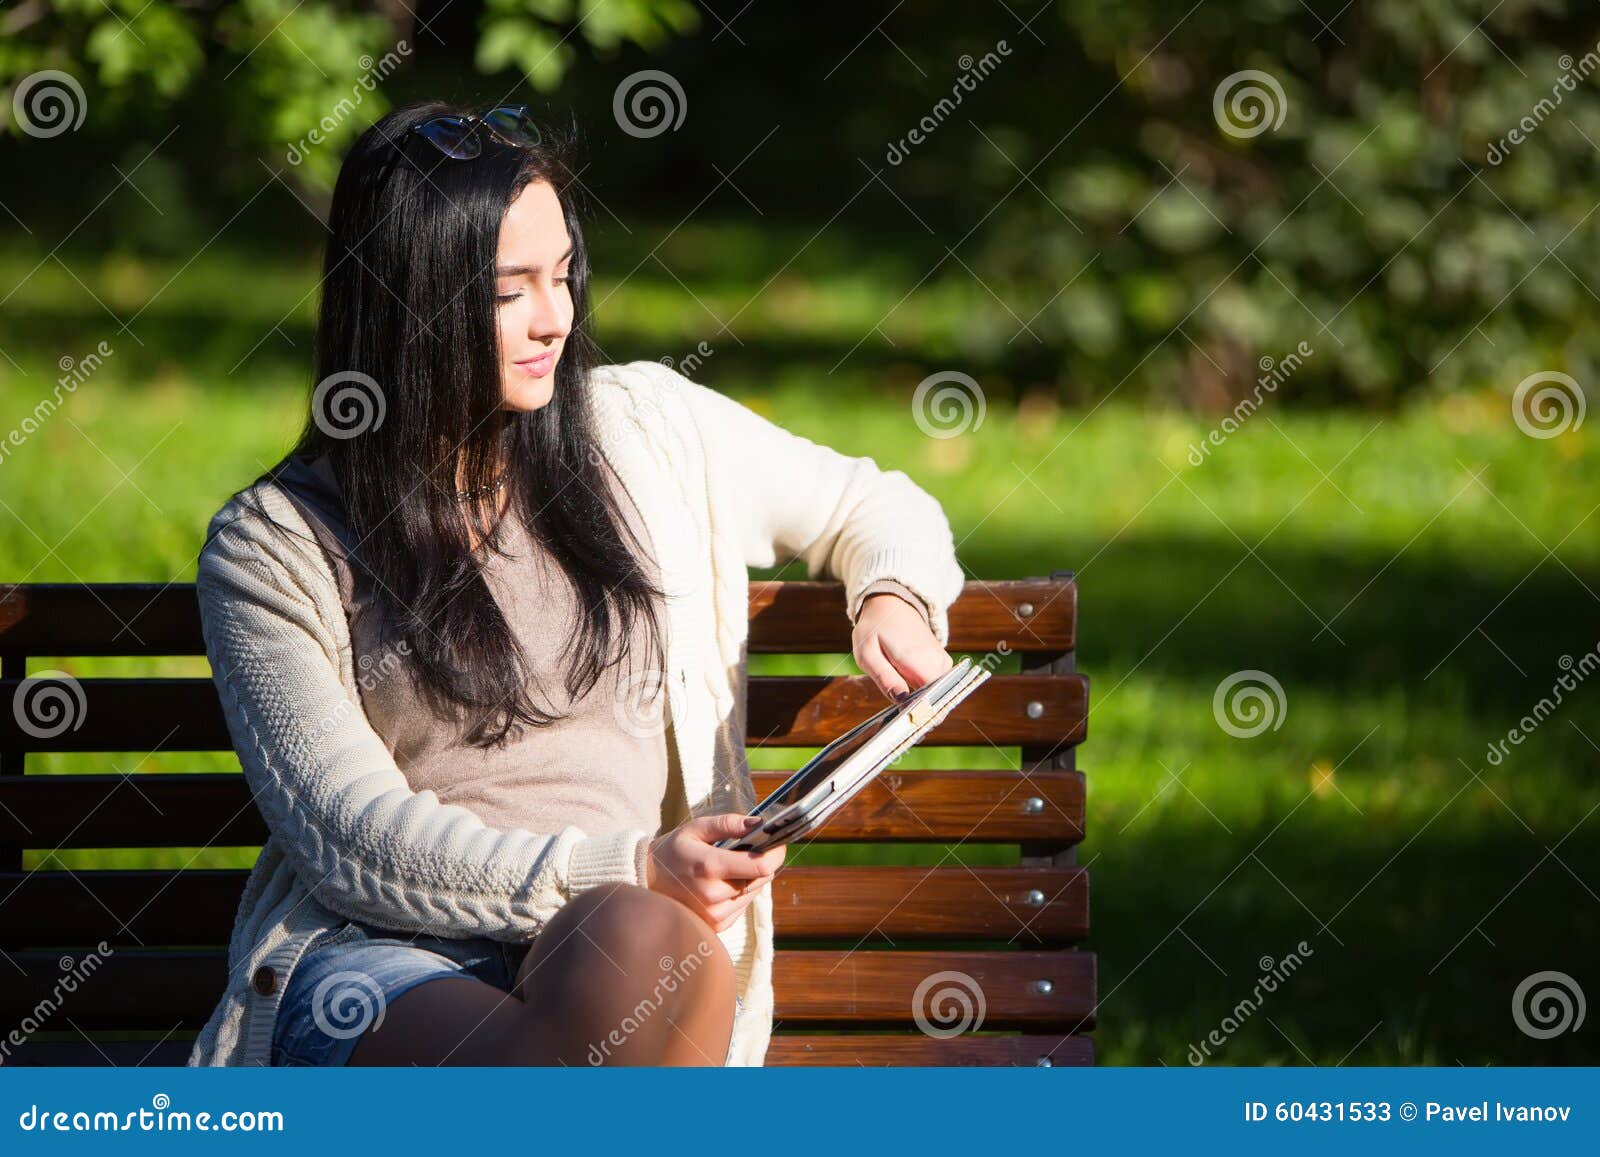 Группа сентябрь женщина курит на лавочке. Девушка сидит с планшетом. Женщина в джинсах сидит на лавке. Женщина курит на лавочке маслом. Женщина с молочным коктейлем на лавочке.